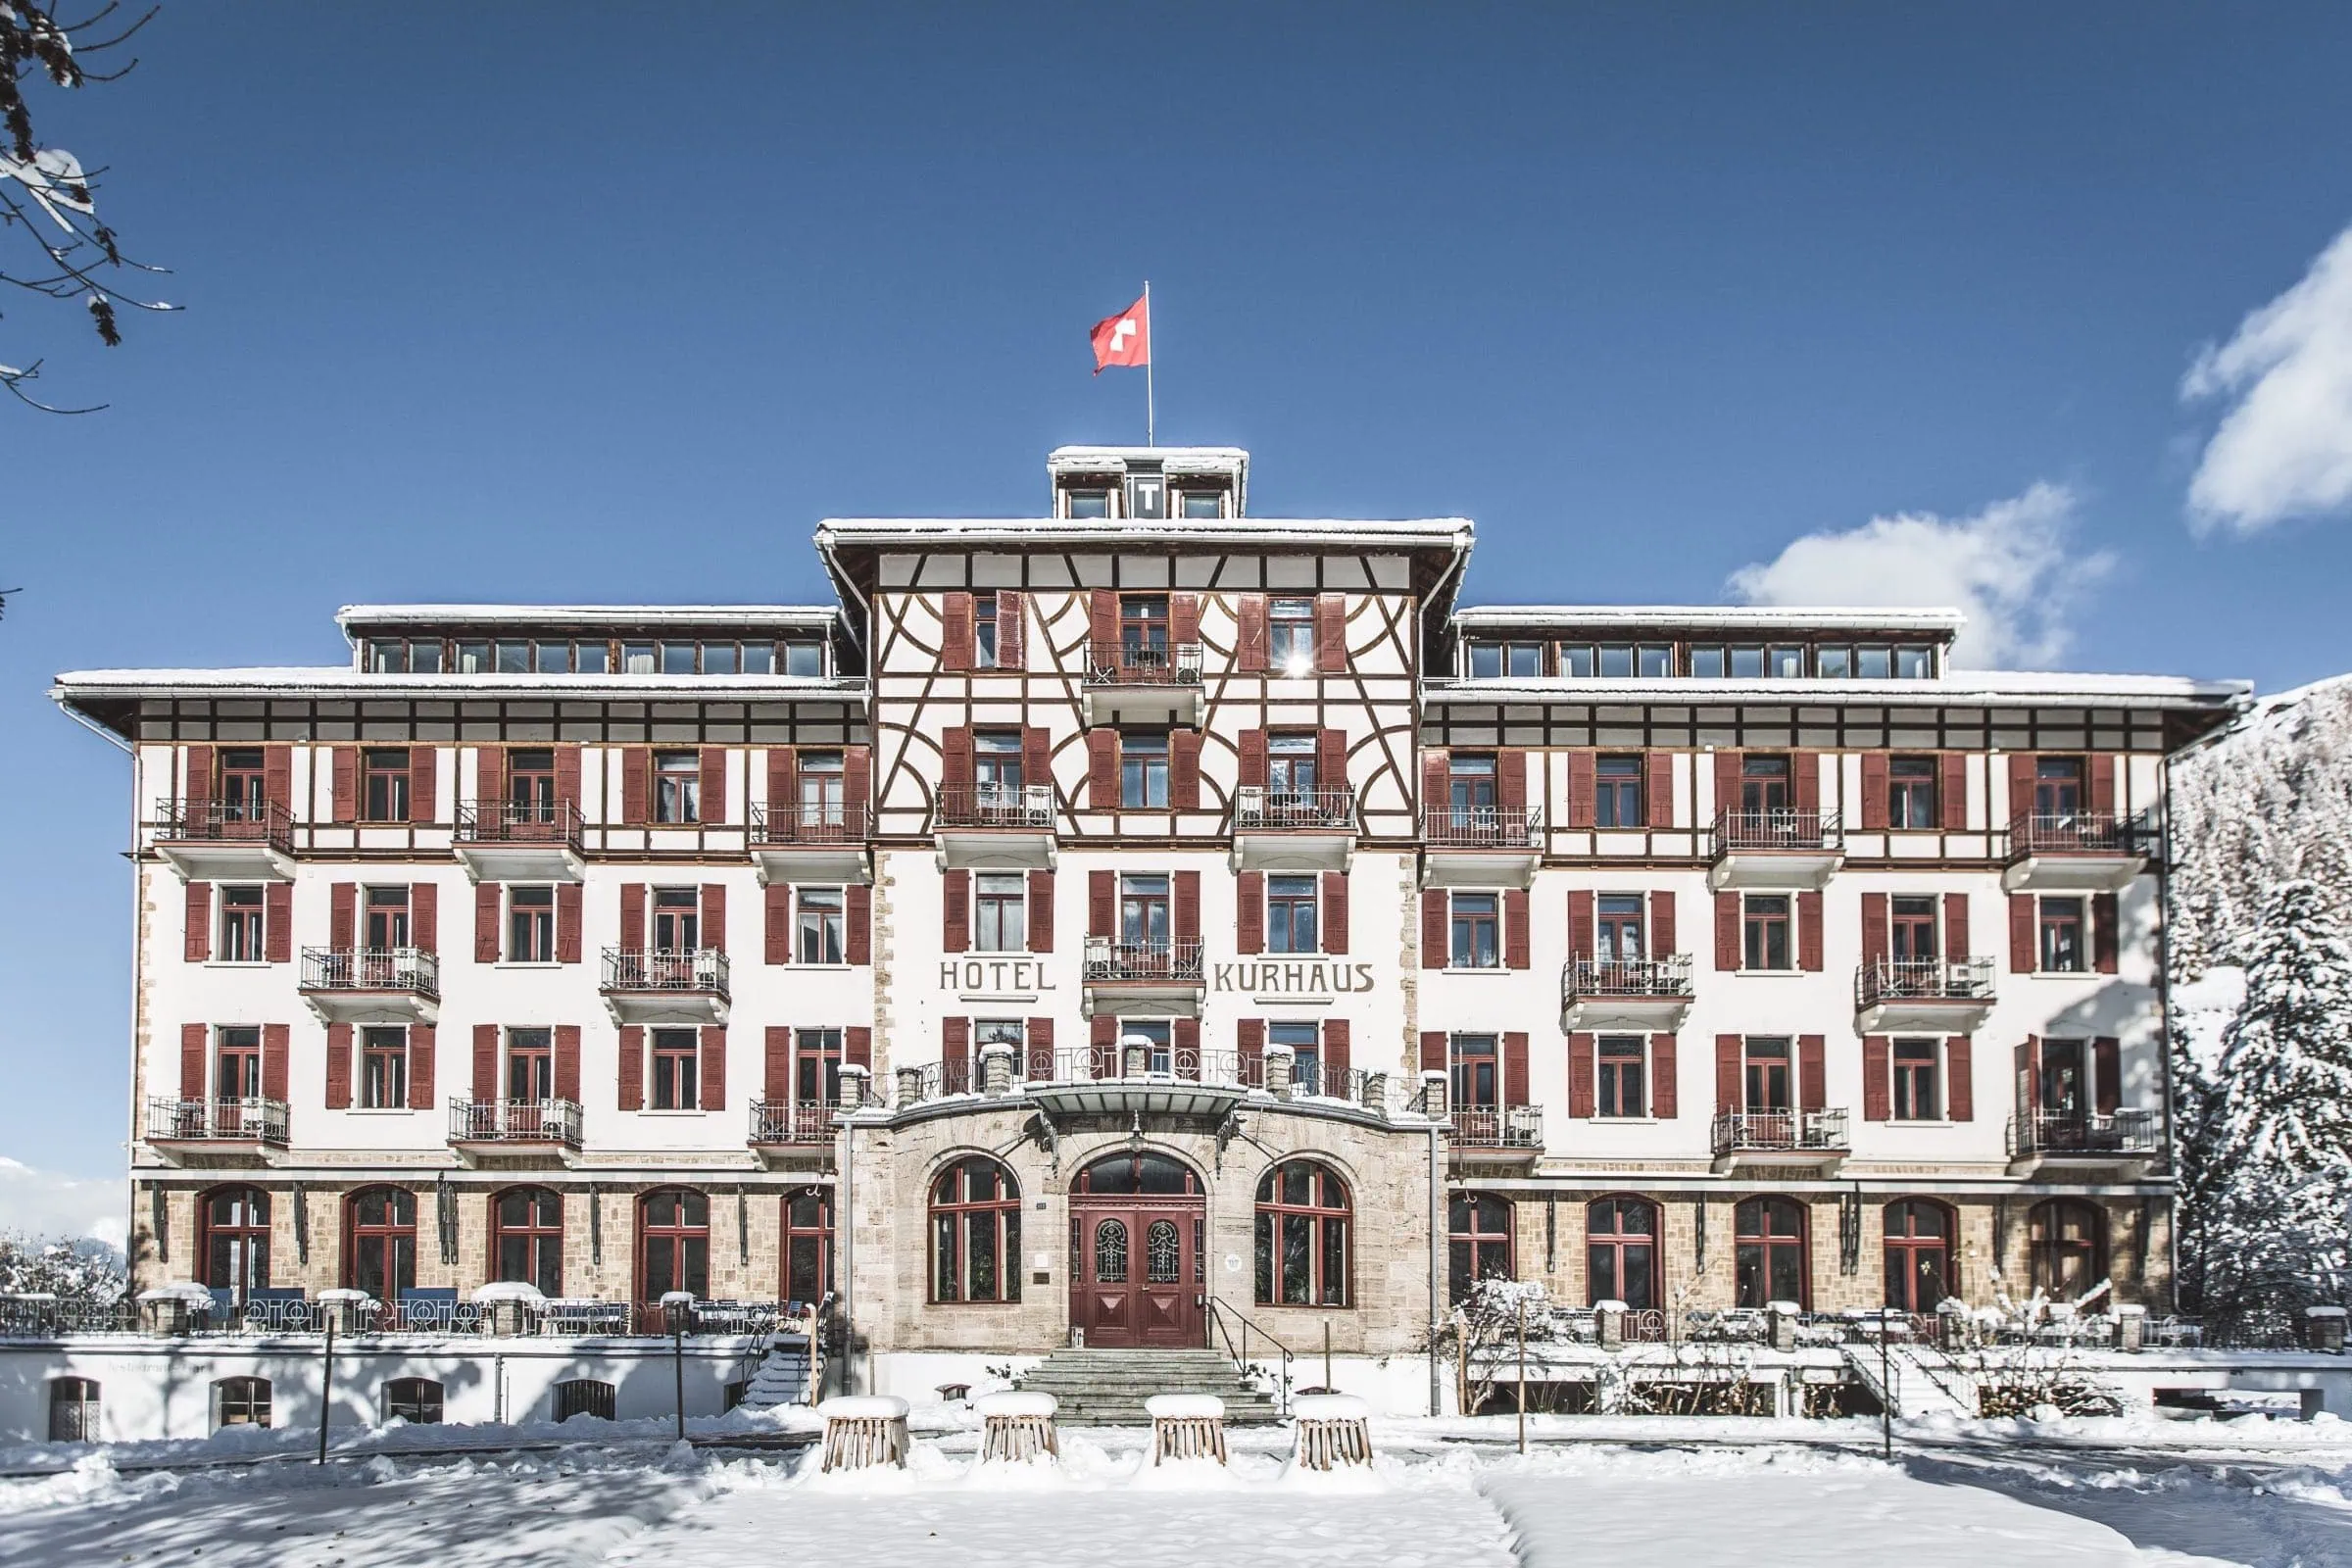 Urlaubstipp Für Familien Von Good Travel: Winter Im Kurhaus Bergün In Graubünden, Schweiz // Himbeer